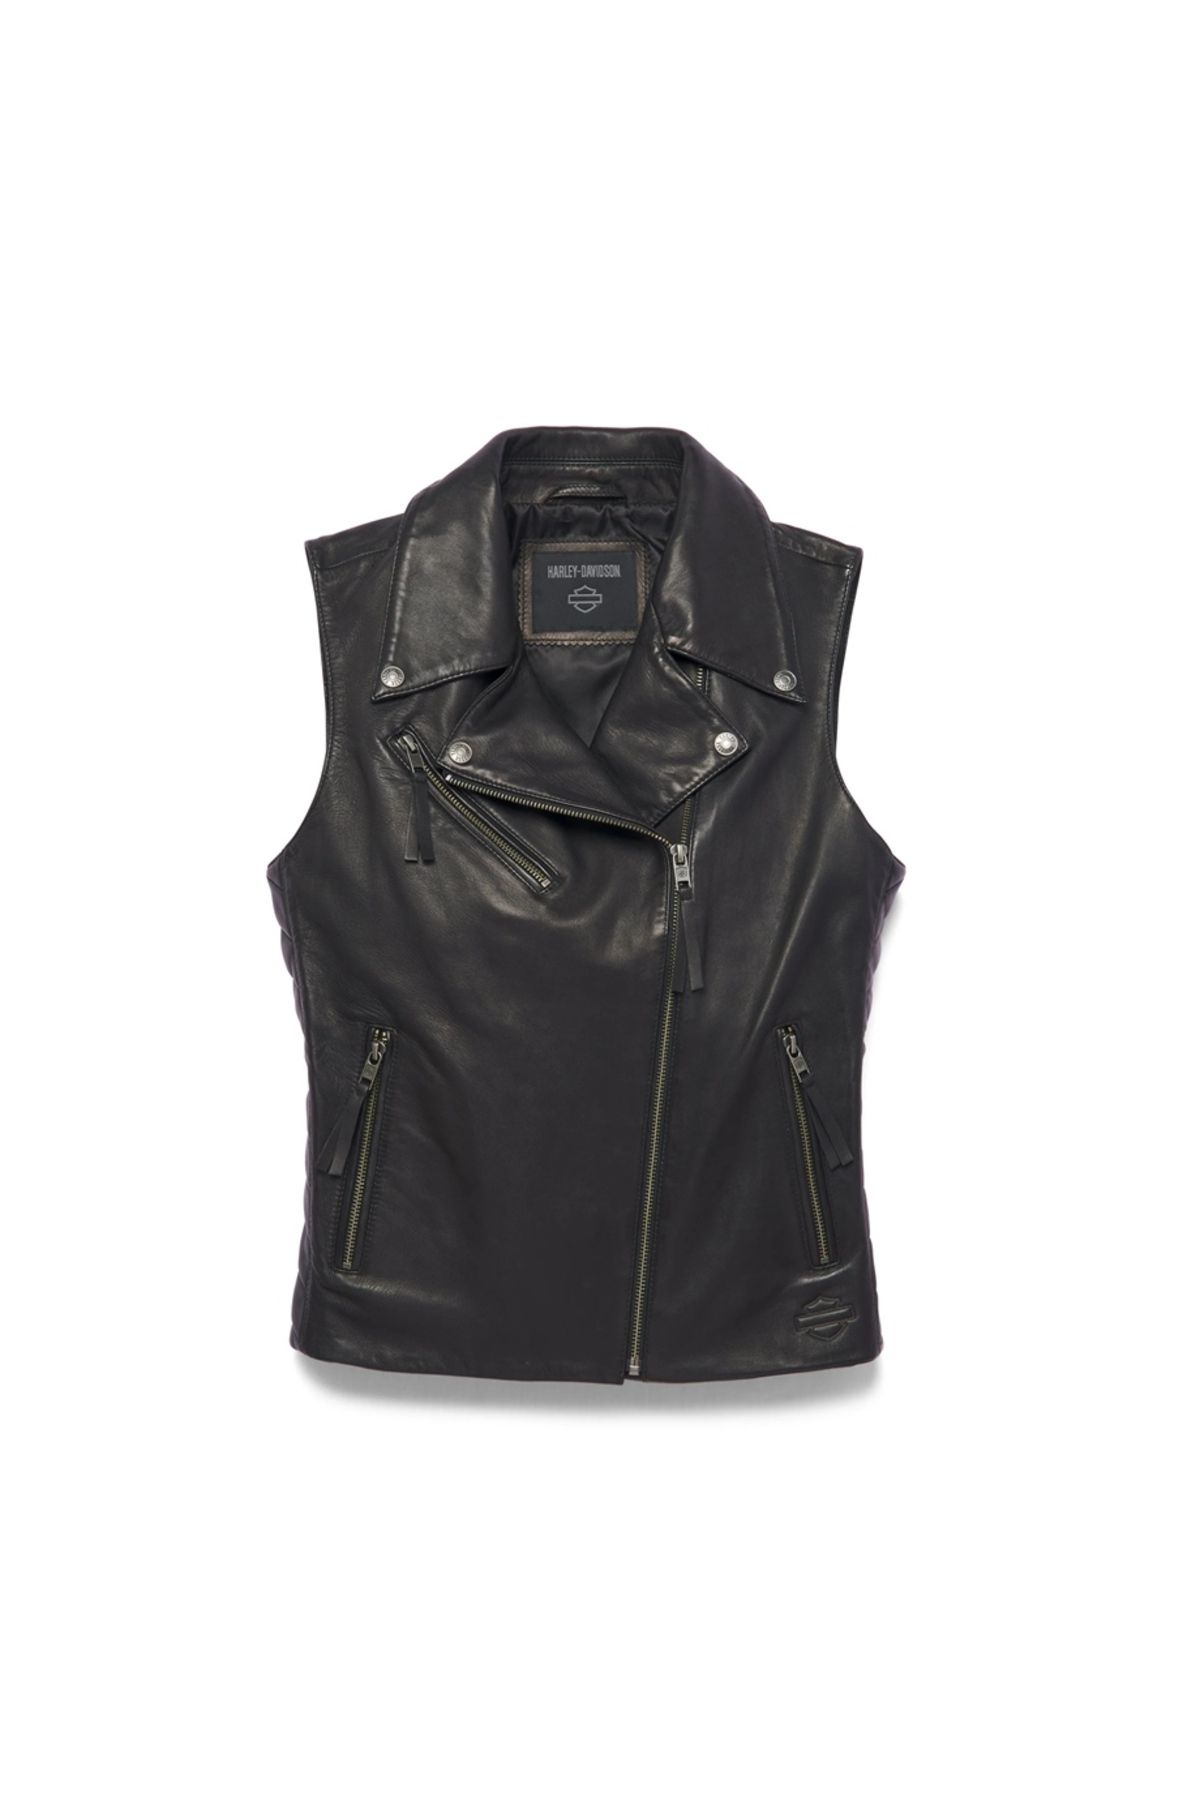 Harley Davidson Harley-davidson Women's Electric Leather Vest